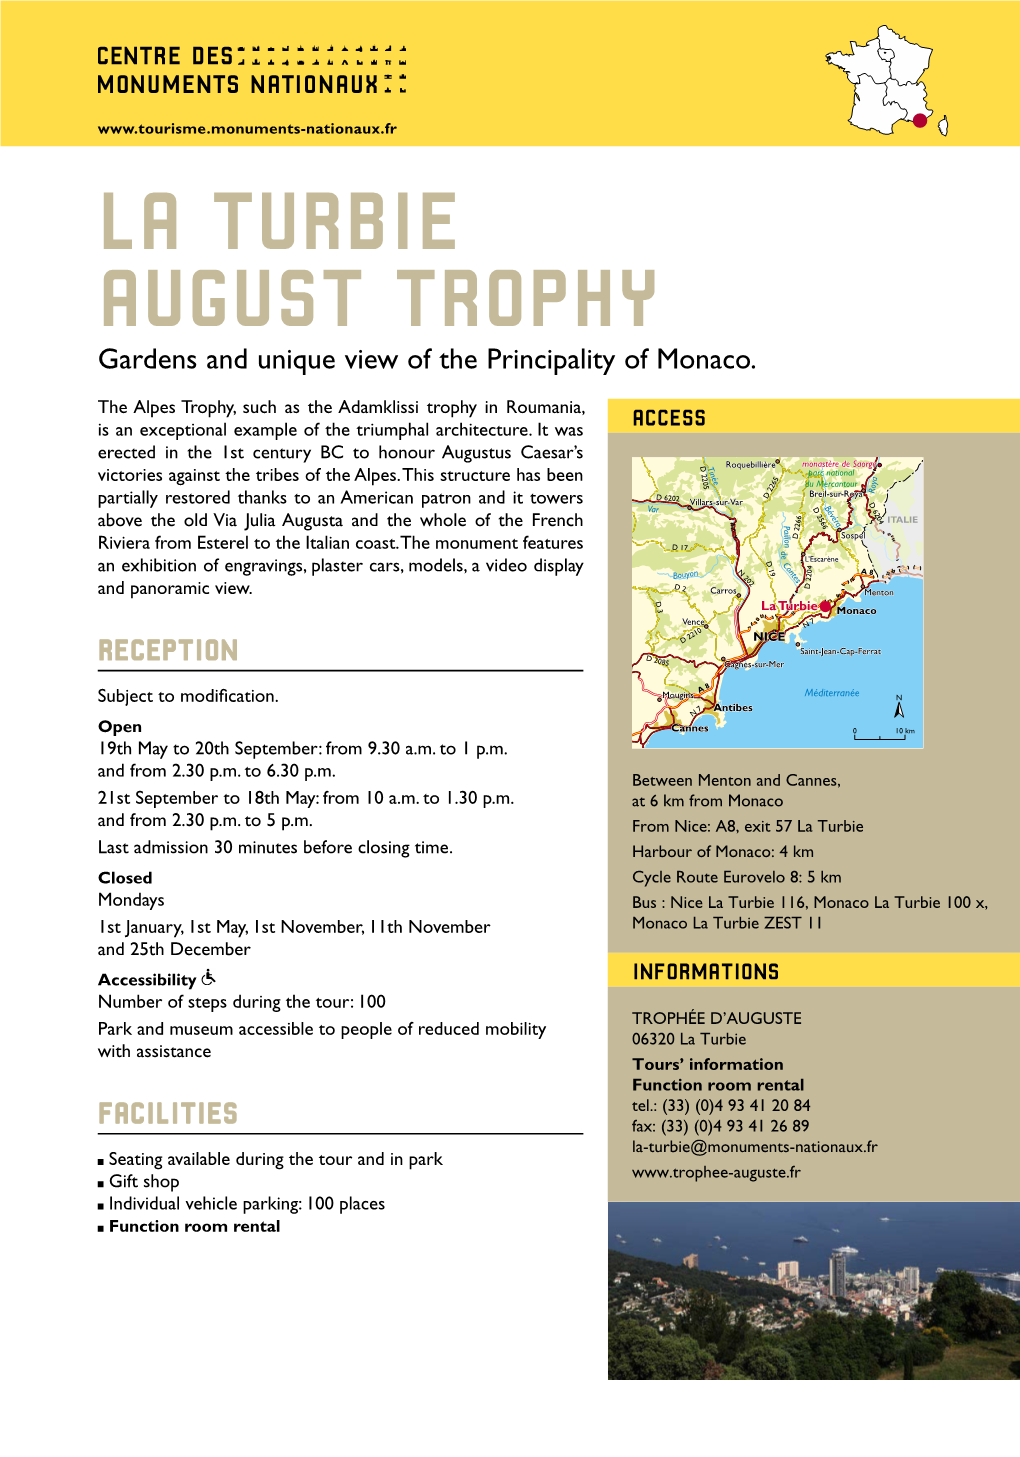 August Trophy in La Turbie